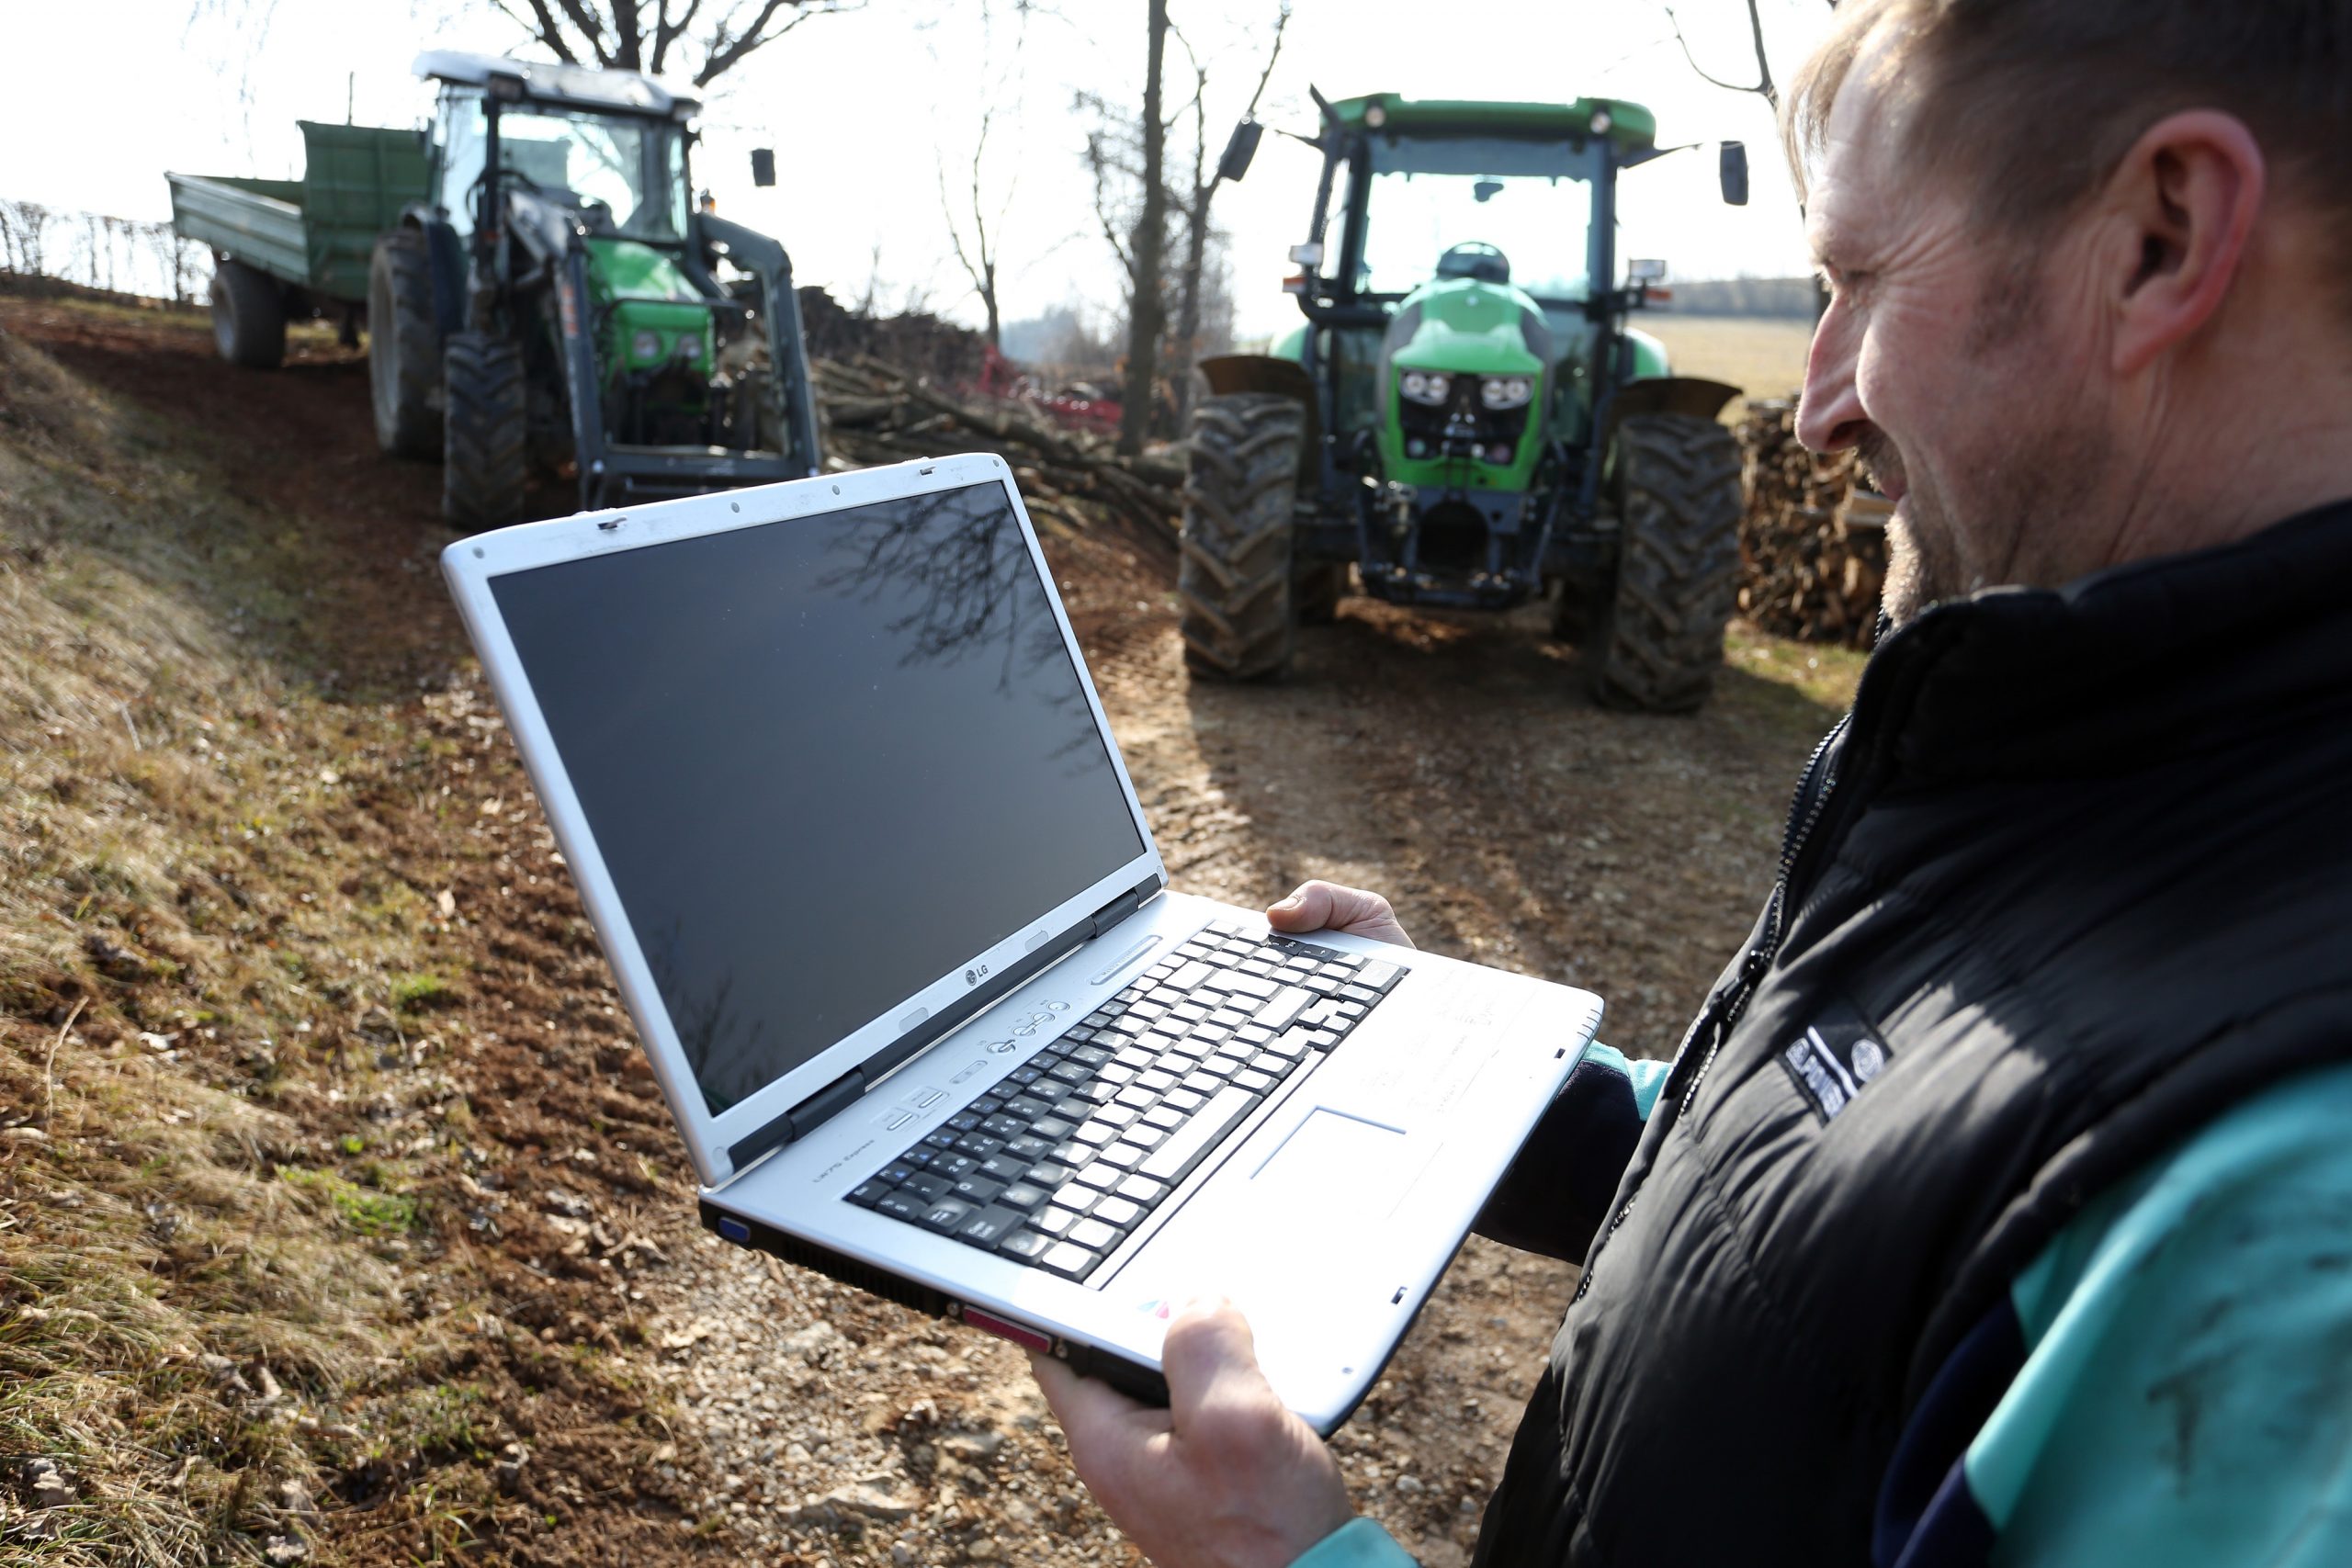 Digitalizacija u poljoprivredi 20.02.2019., Duga resa - Digitalizacija u poljoprivredi. 
Photo: Kristina Stedul Fabac/PIXSELL